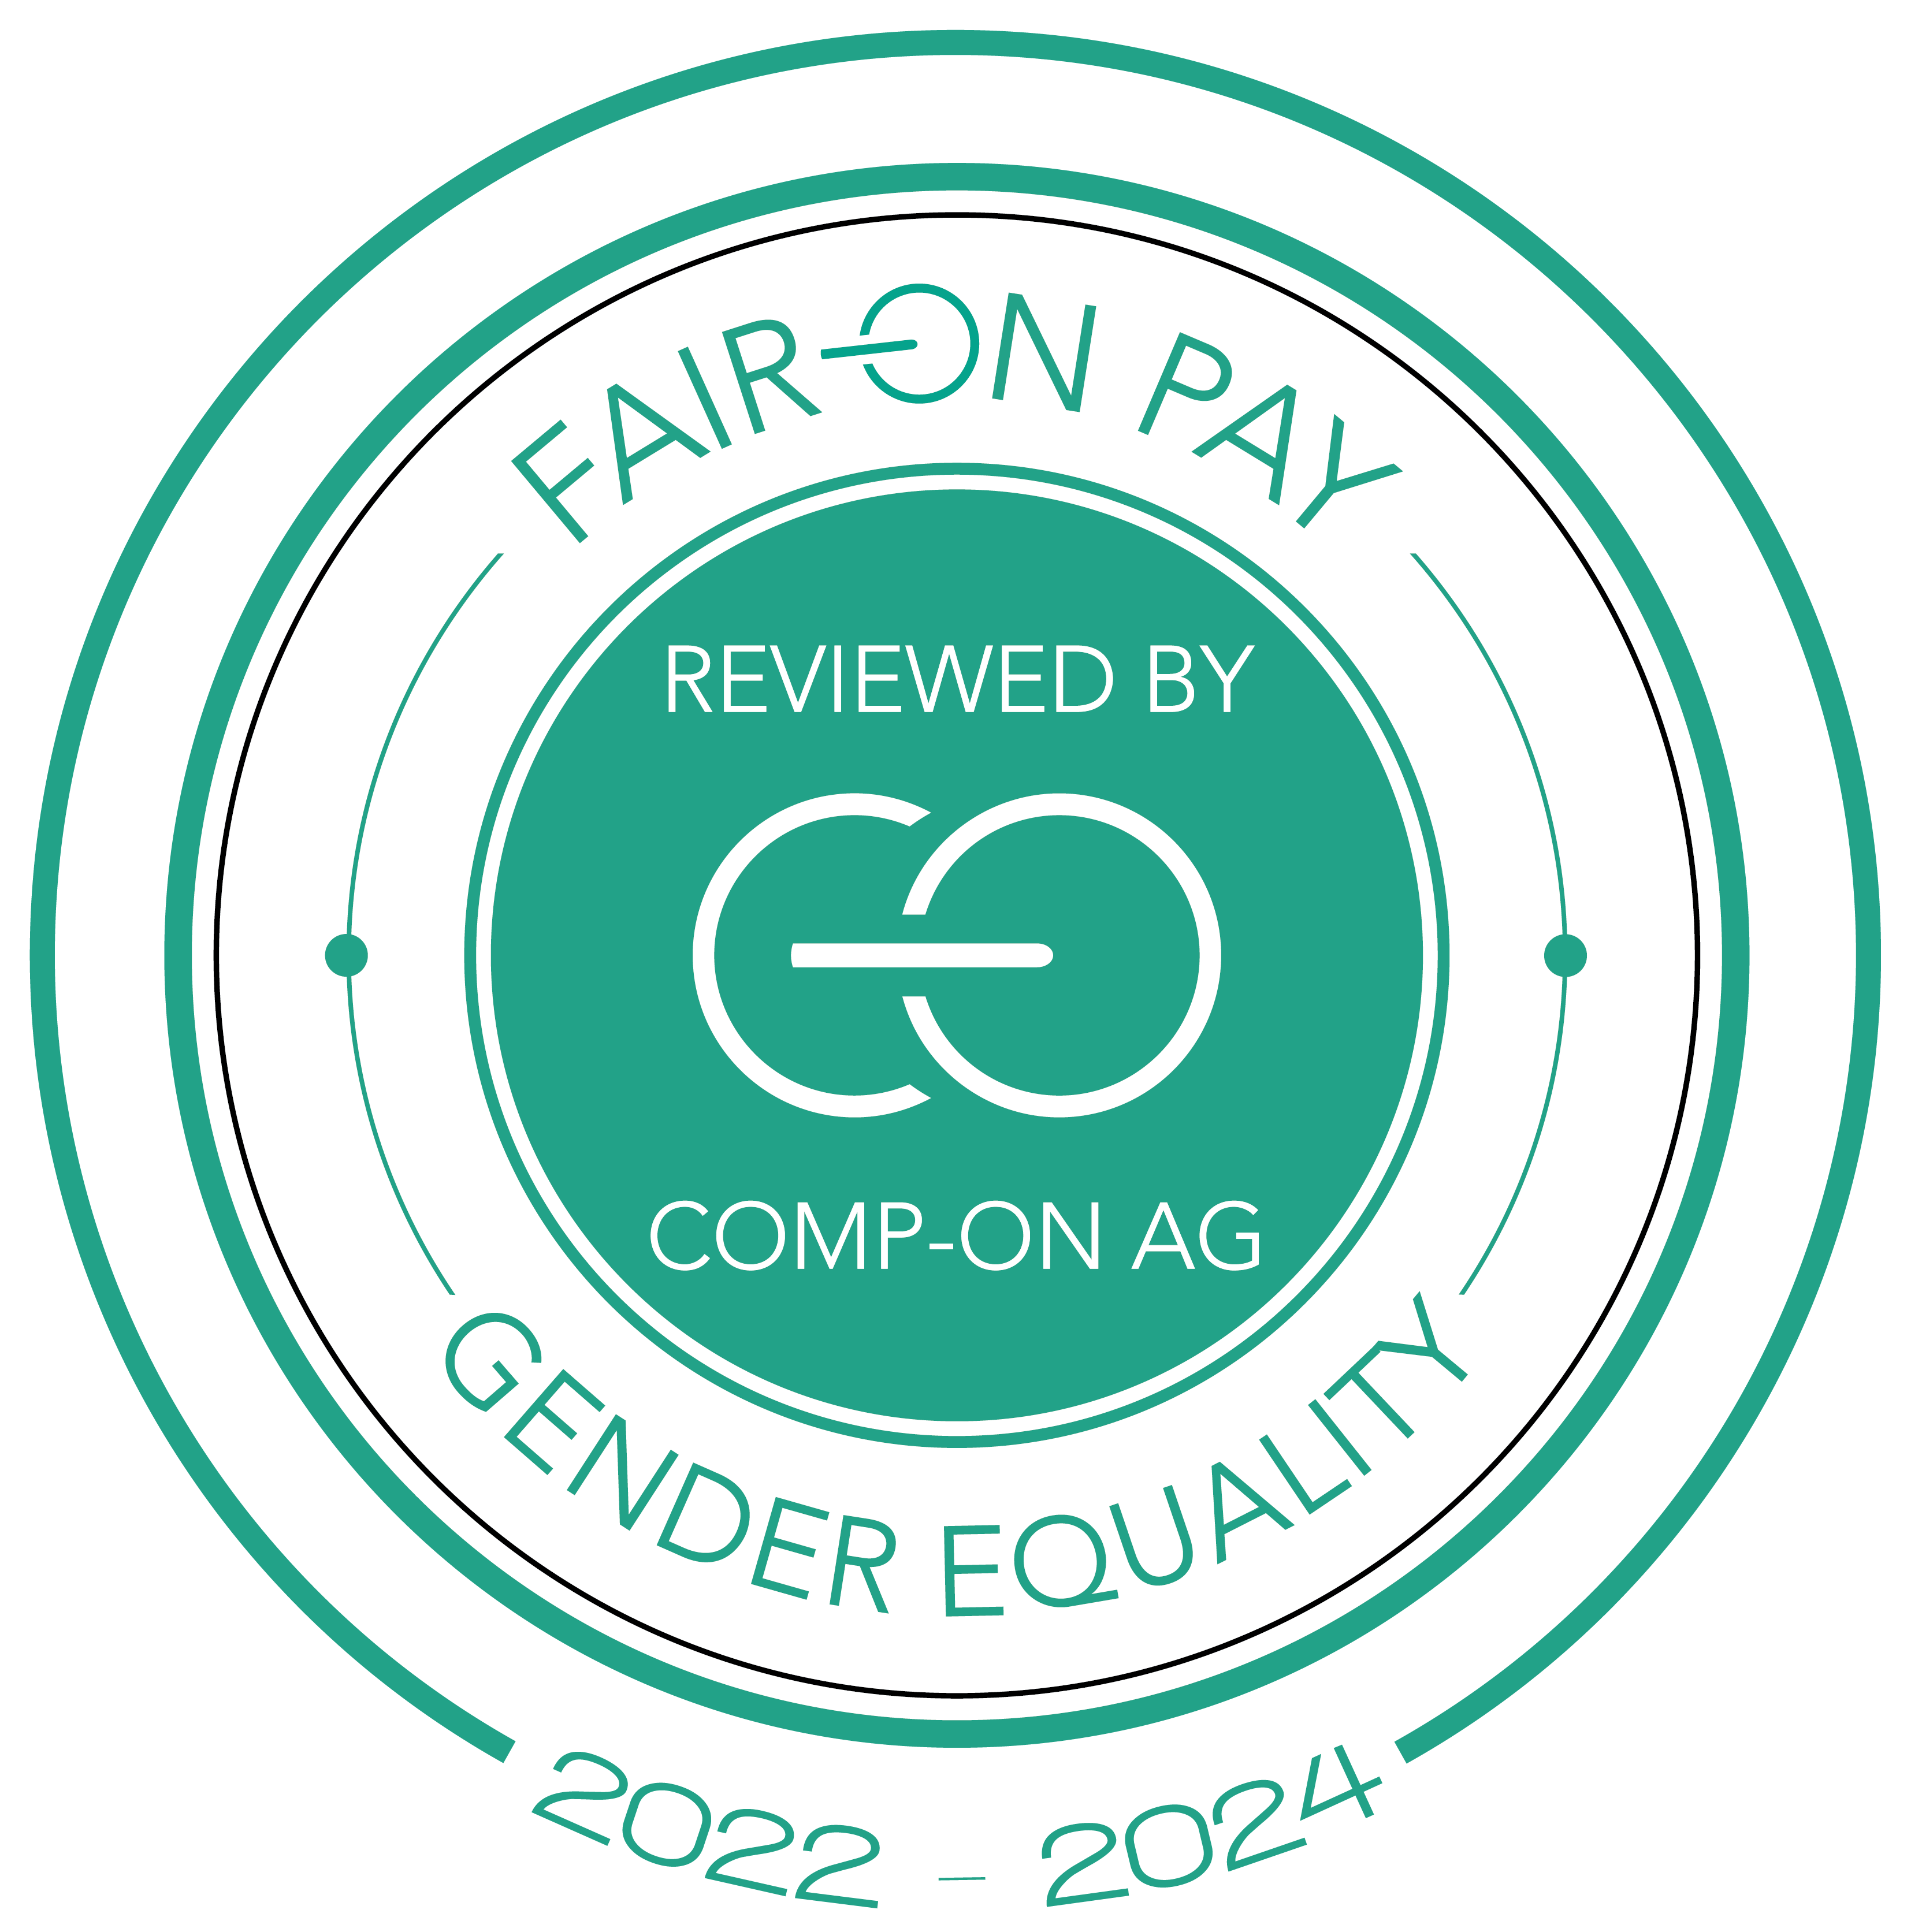 Logo Fair On Pay